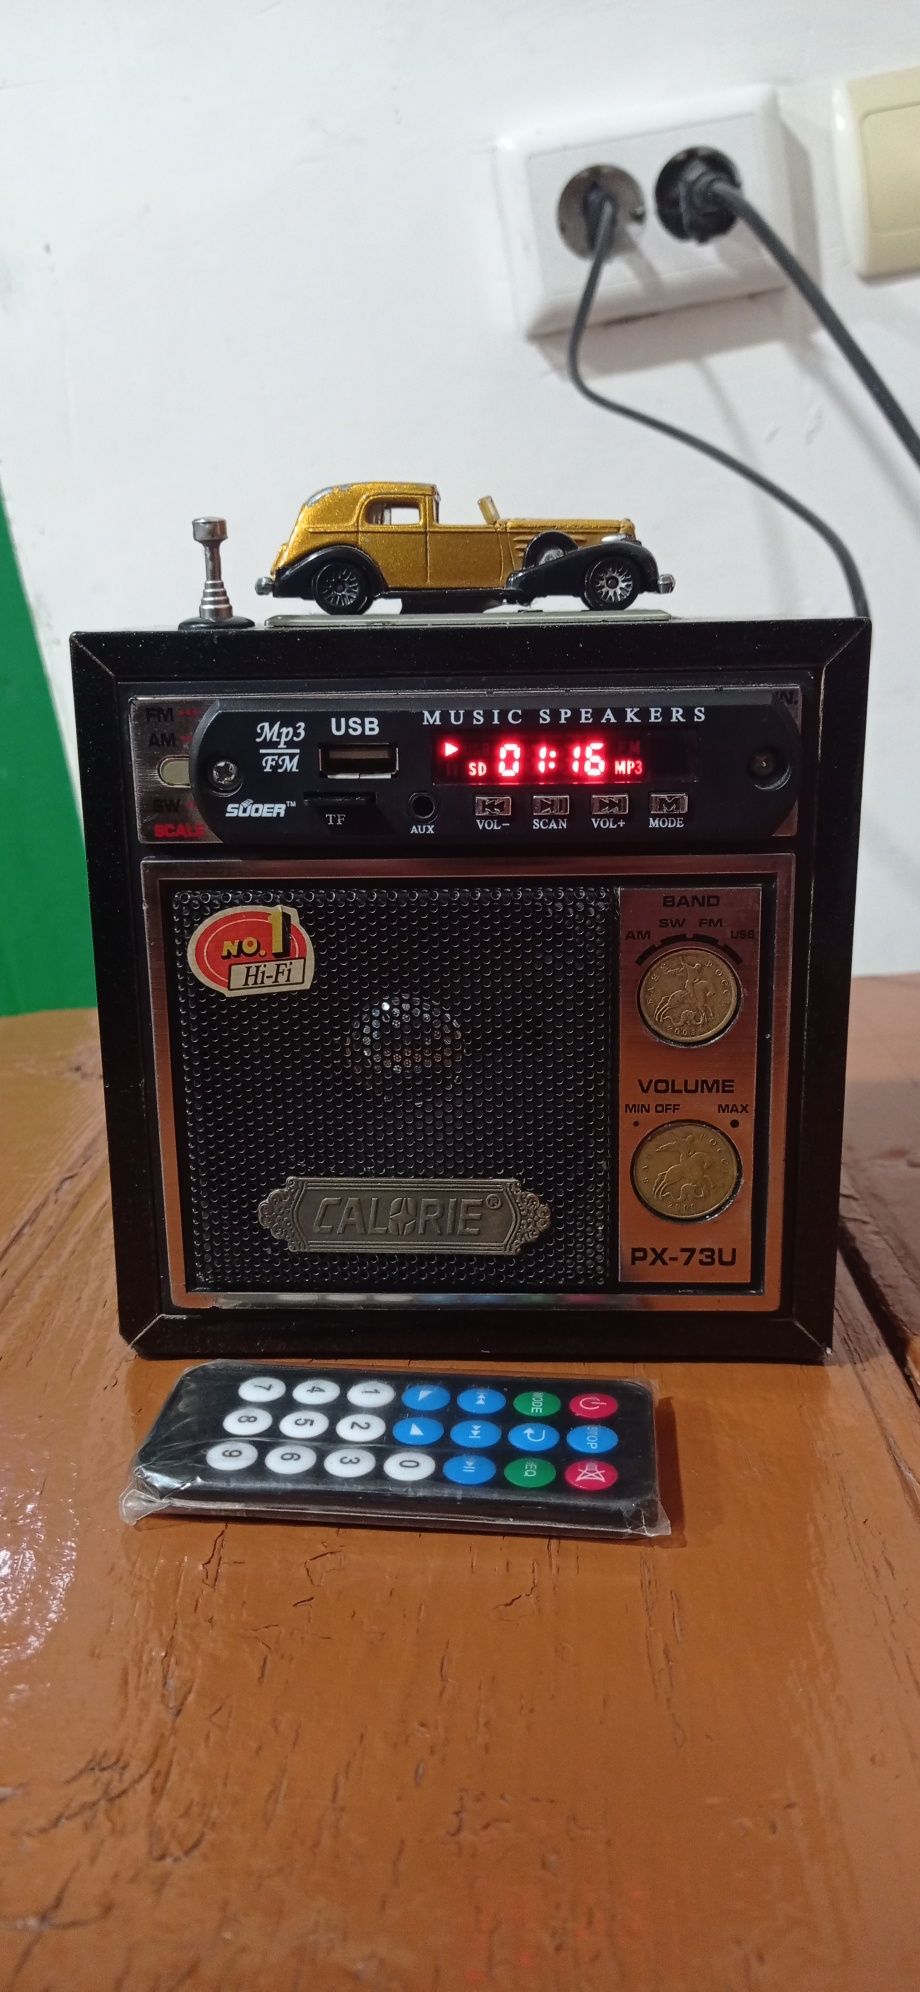 Radio sotiladi USB SD FLESHKA õqidi funksiyasi köp .